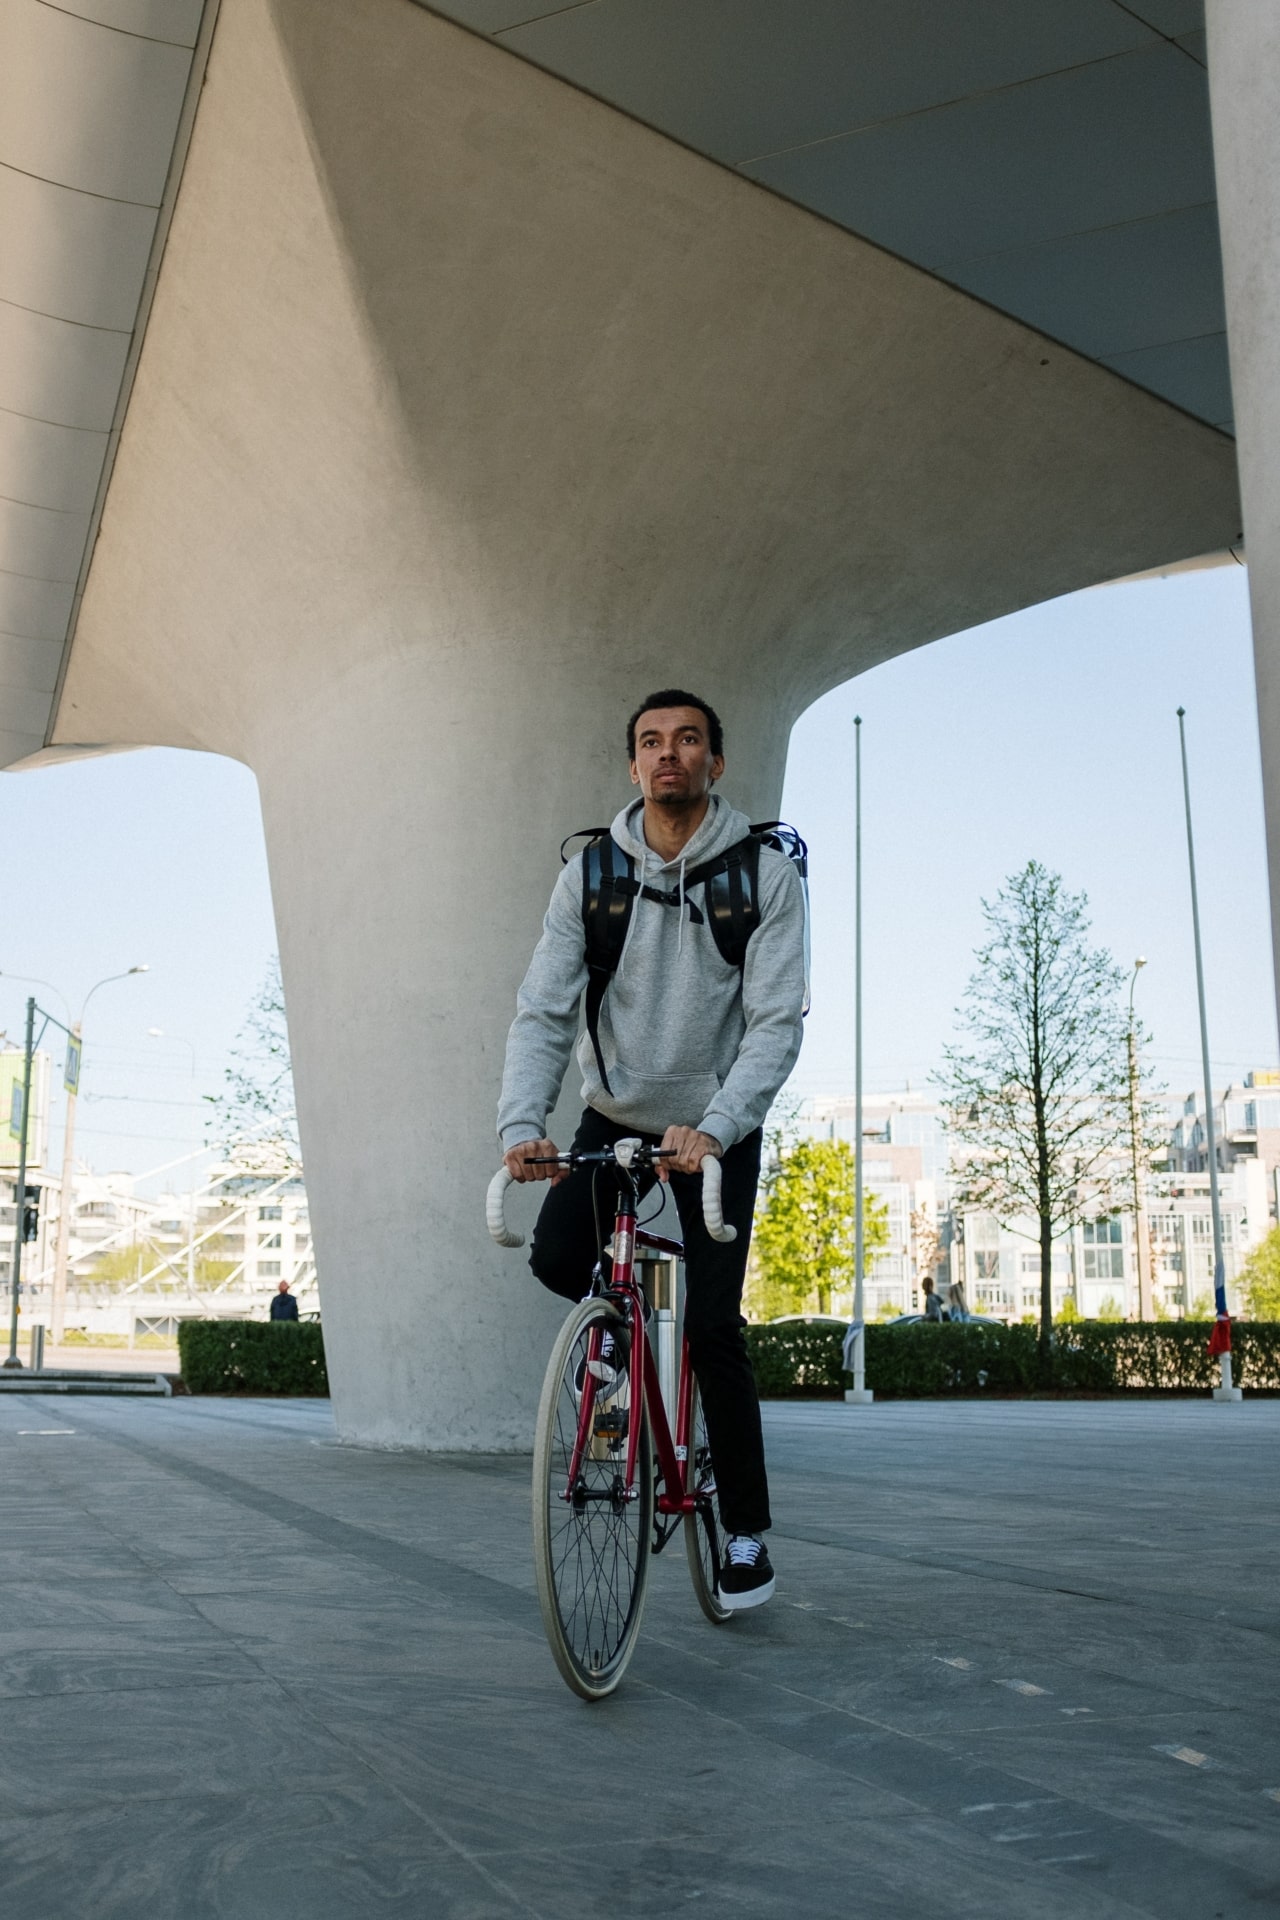 Exemple de texte alternatif sur une image accessible d'un homme à vélo en milieu urbain.